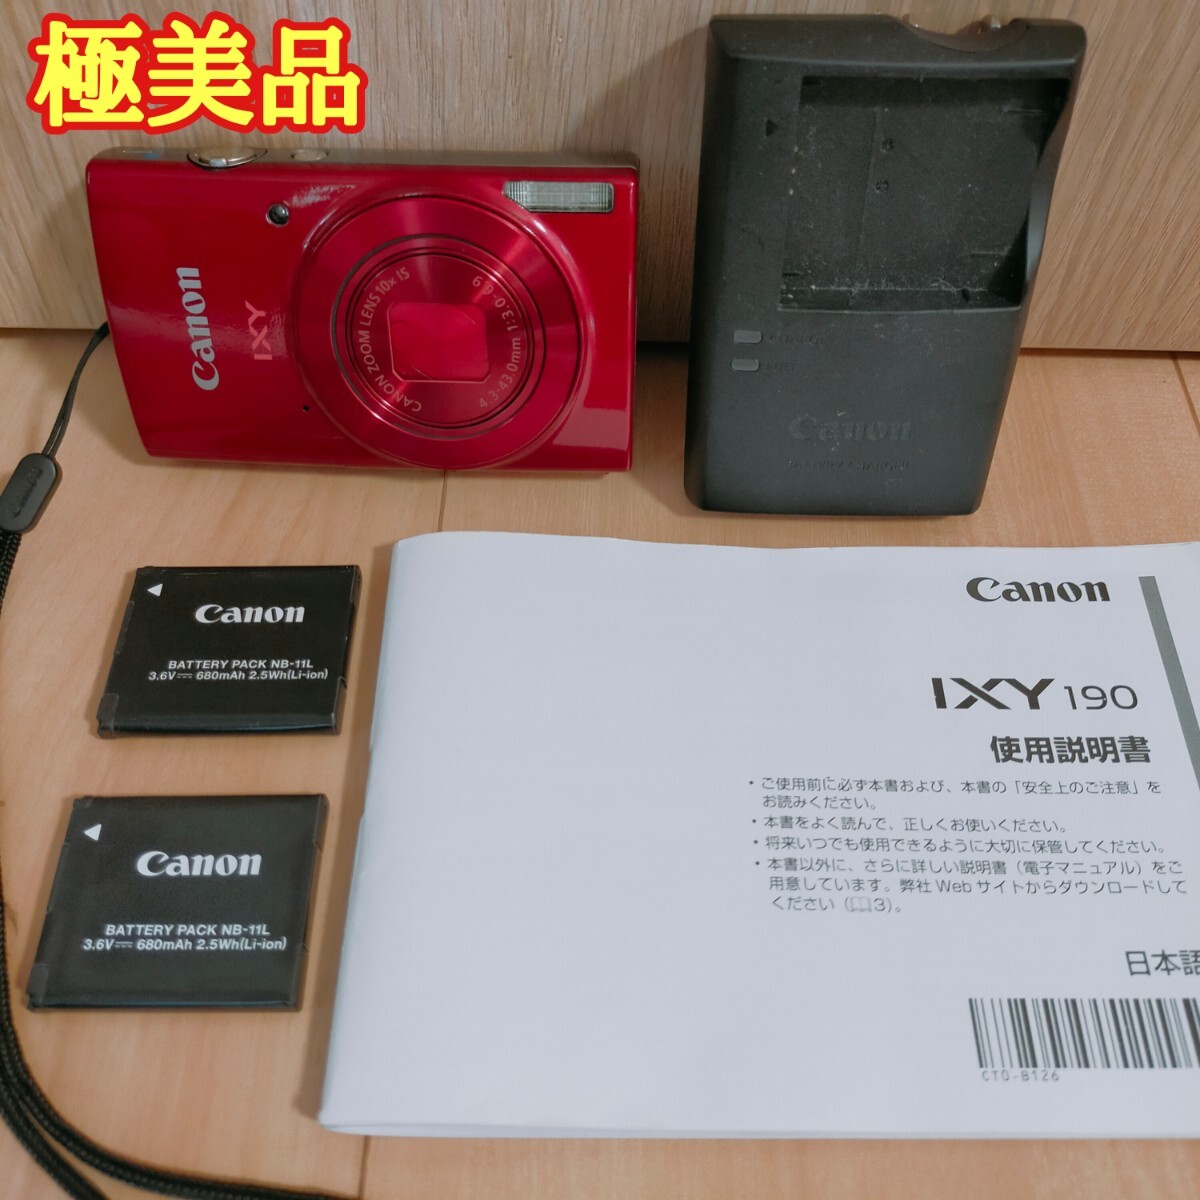 Canon キャノン コンパクトデジタルカメラ デジカメ CanonIXY190 _画像1